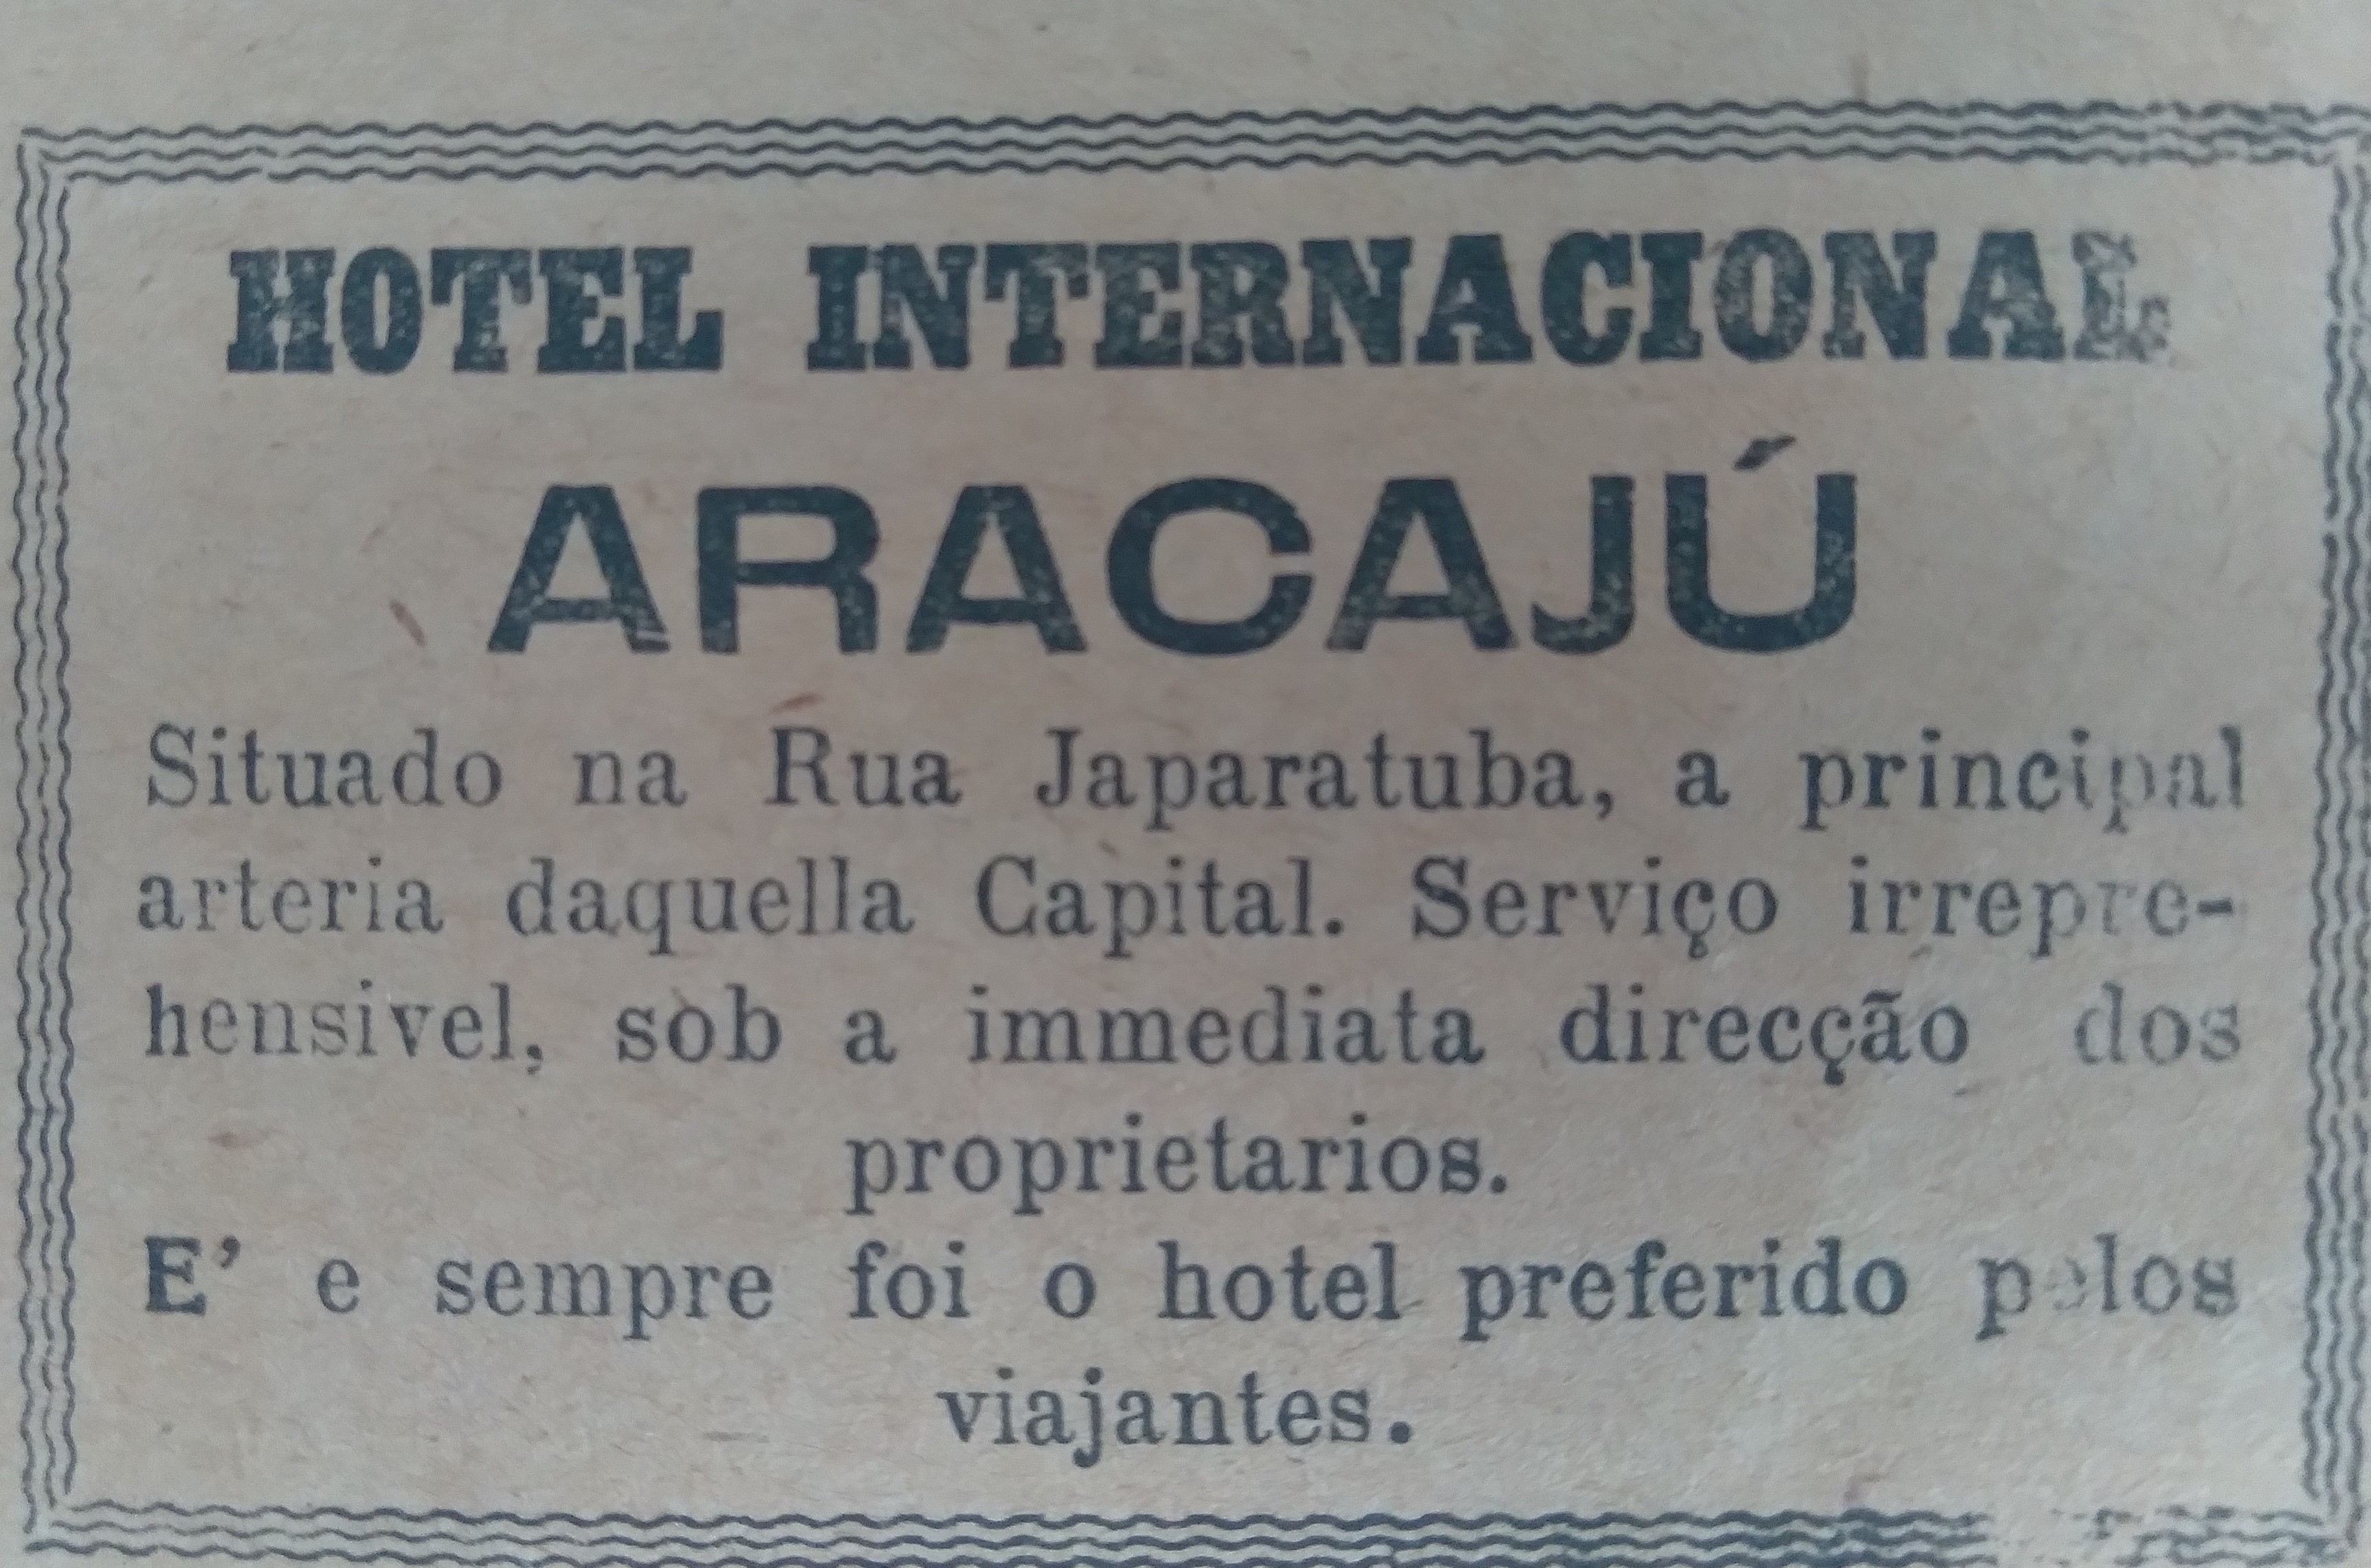 Anúncio do Hotel Internacional de Aracajú